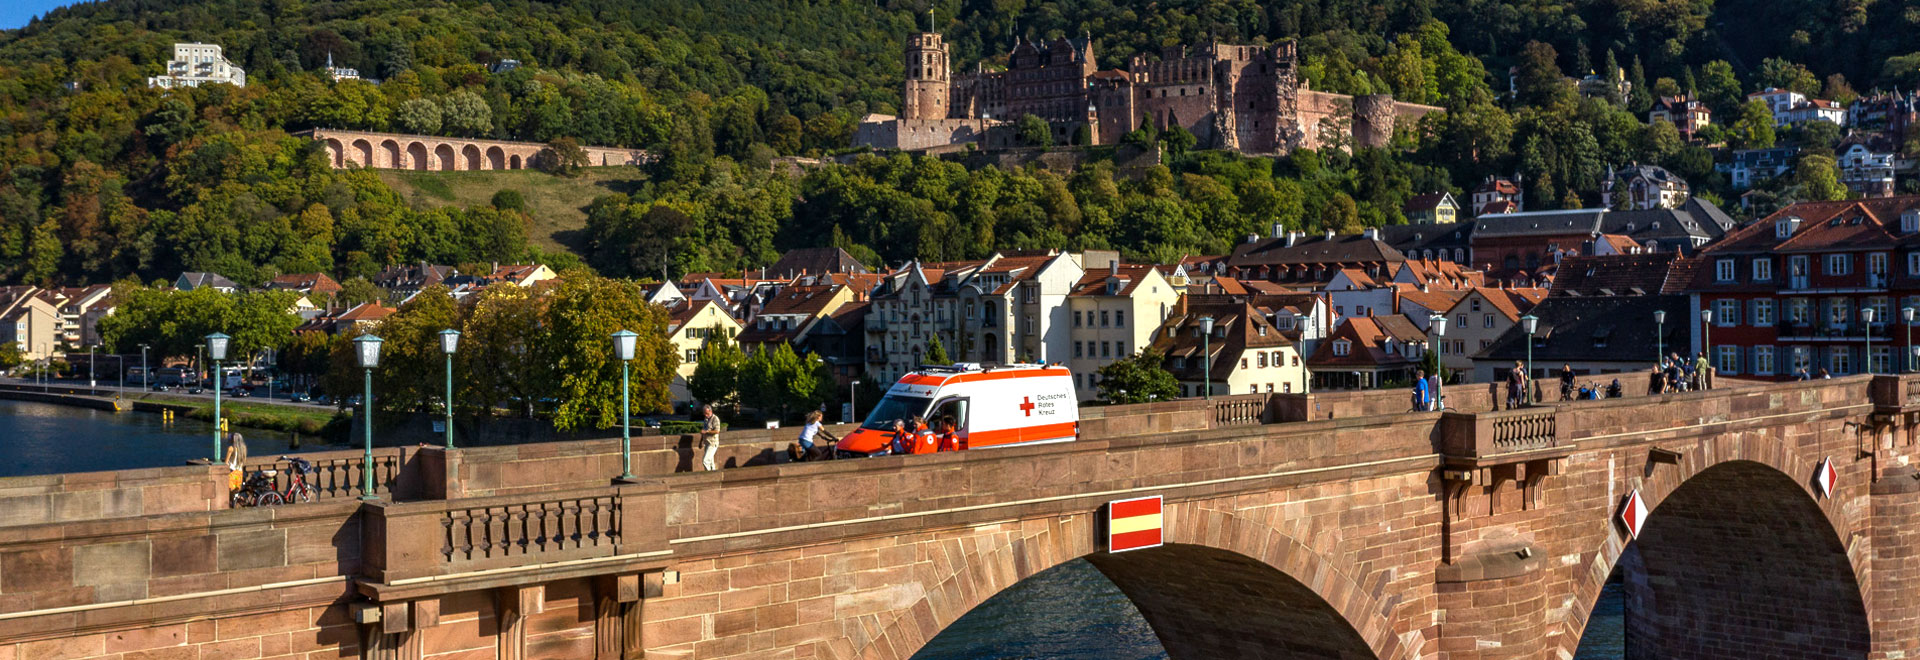 Rettungsfahrzeug auf der Brücke unterhalb des Heidelberger Schlosses